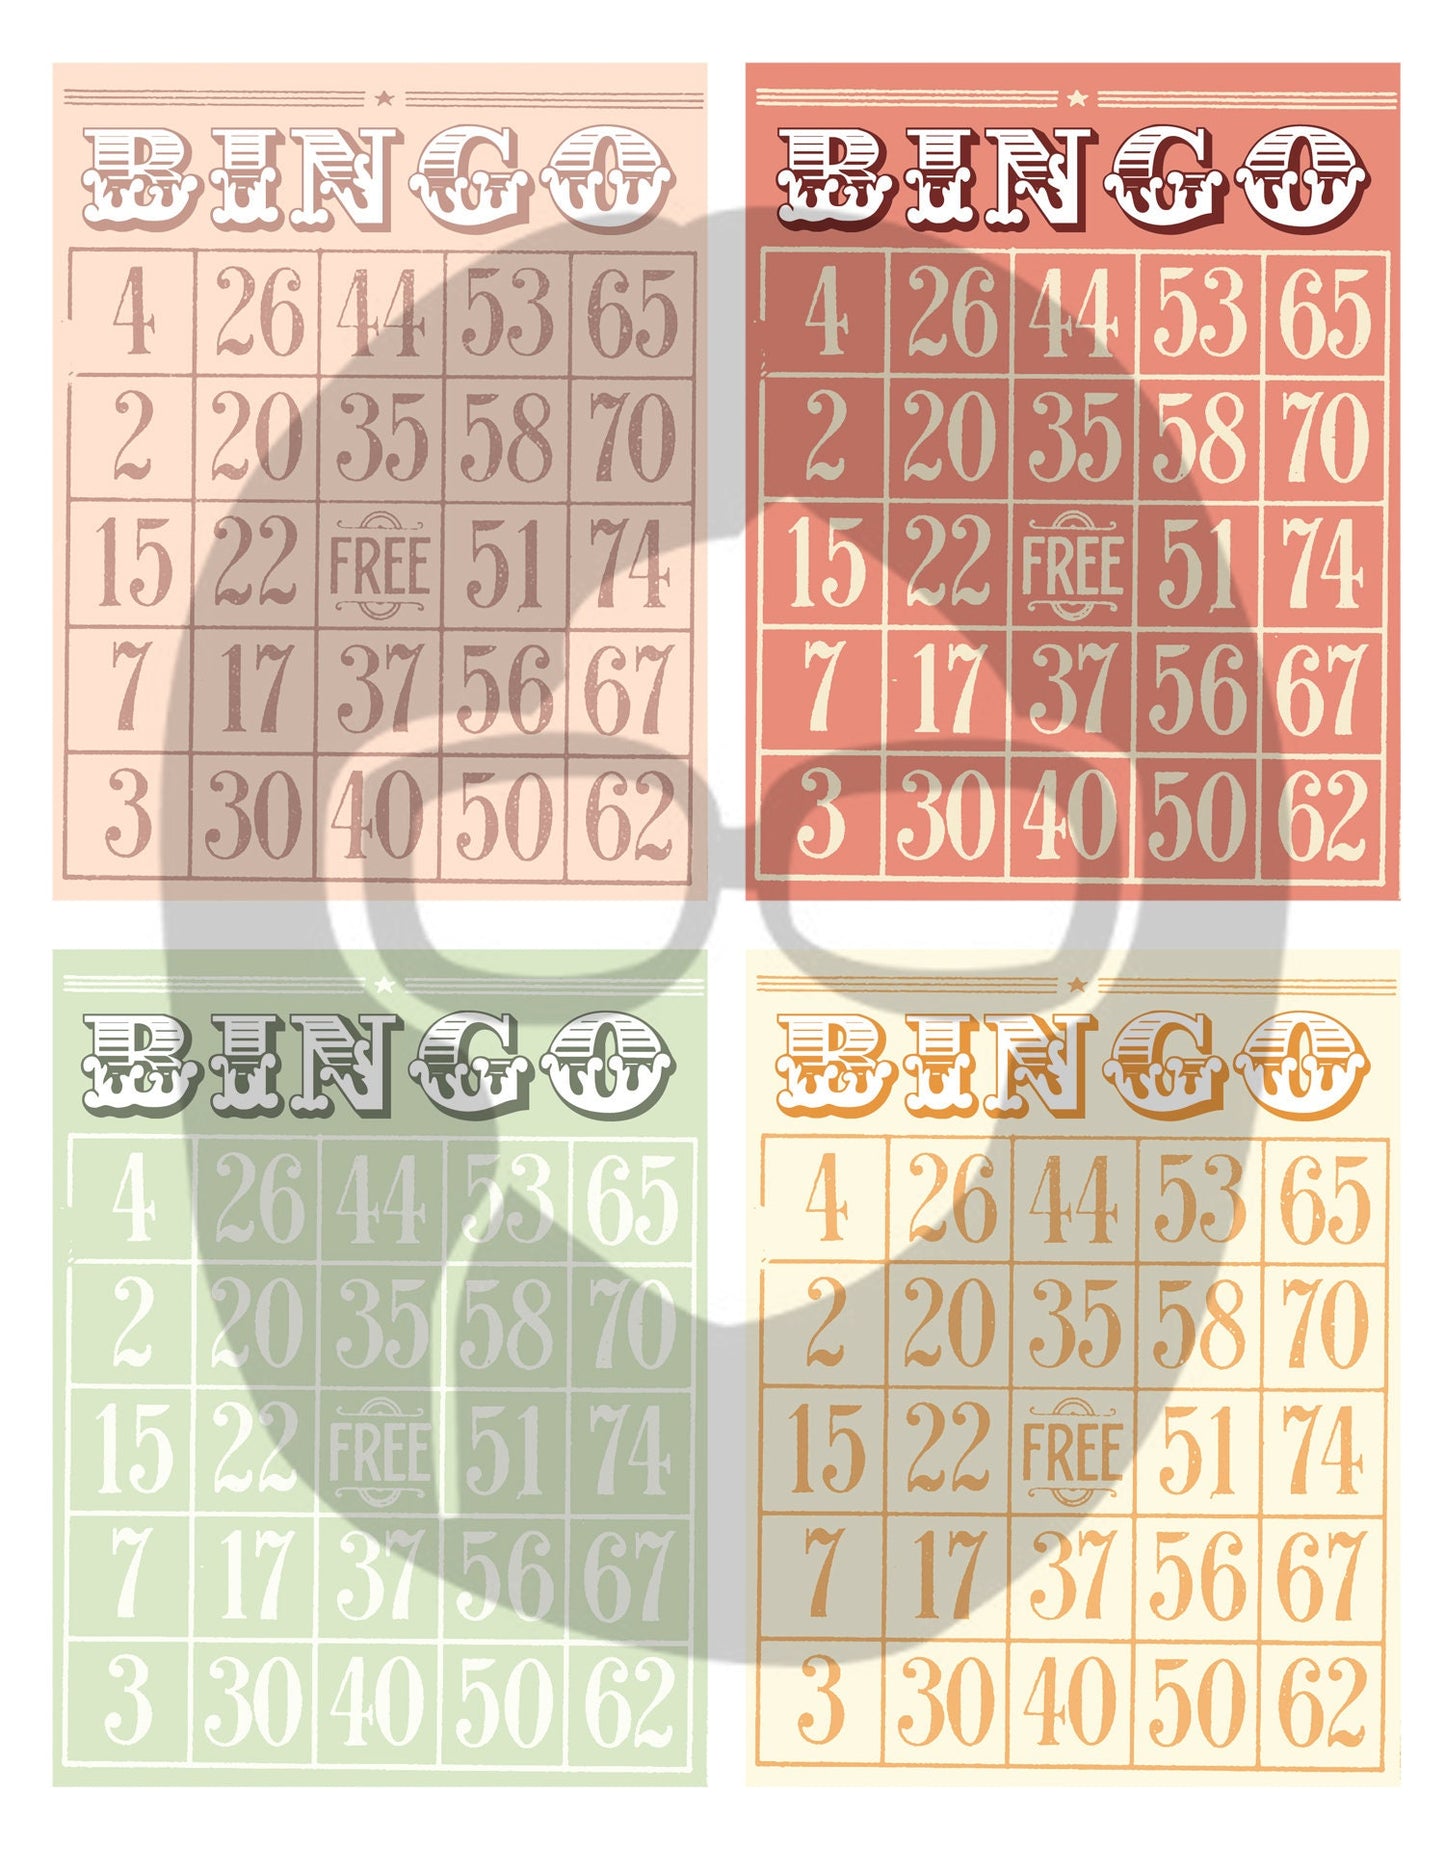 Blank Bingo Cards Set #1 - 3 Pg Instant Download - bingo digital roses floral, project life kit, junk journal supply